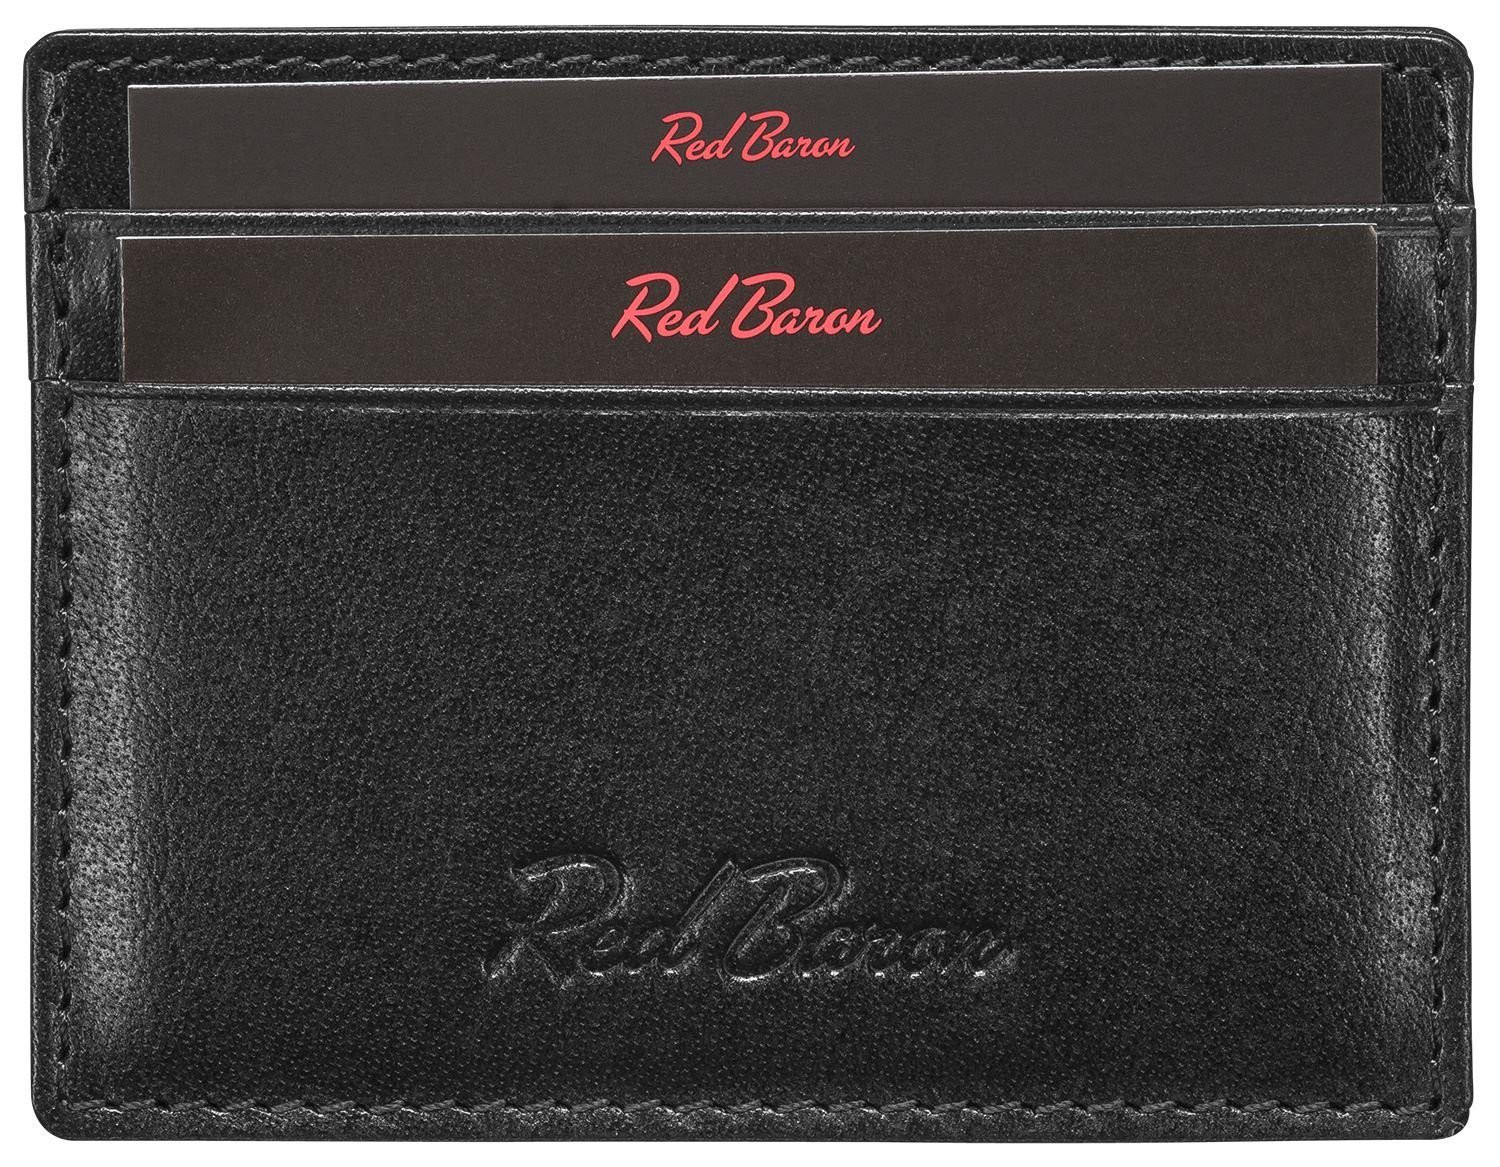 Red Baron Kartenetui RB-CC-001-03, 4 Kreditkartenfächer, Leder, schlicht, einfach | Etuis